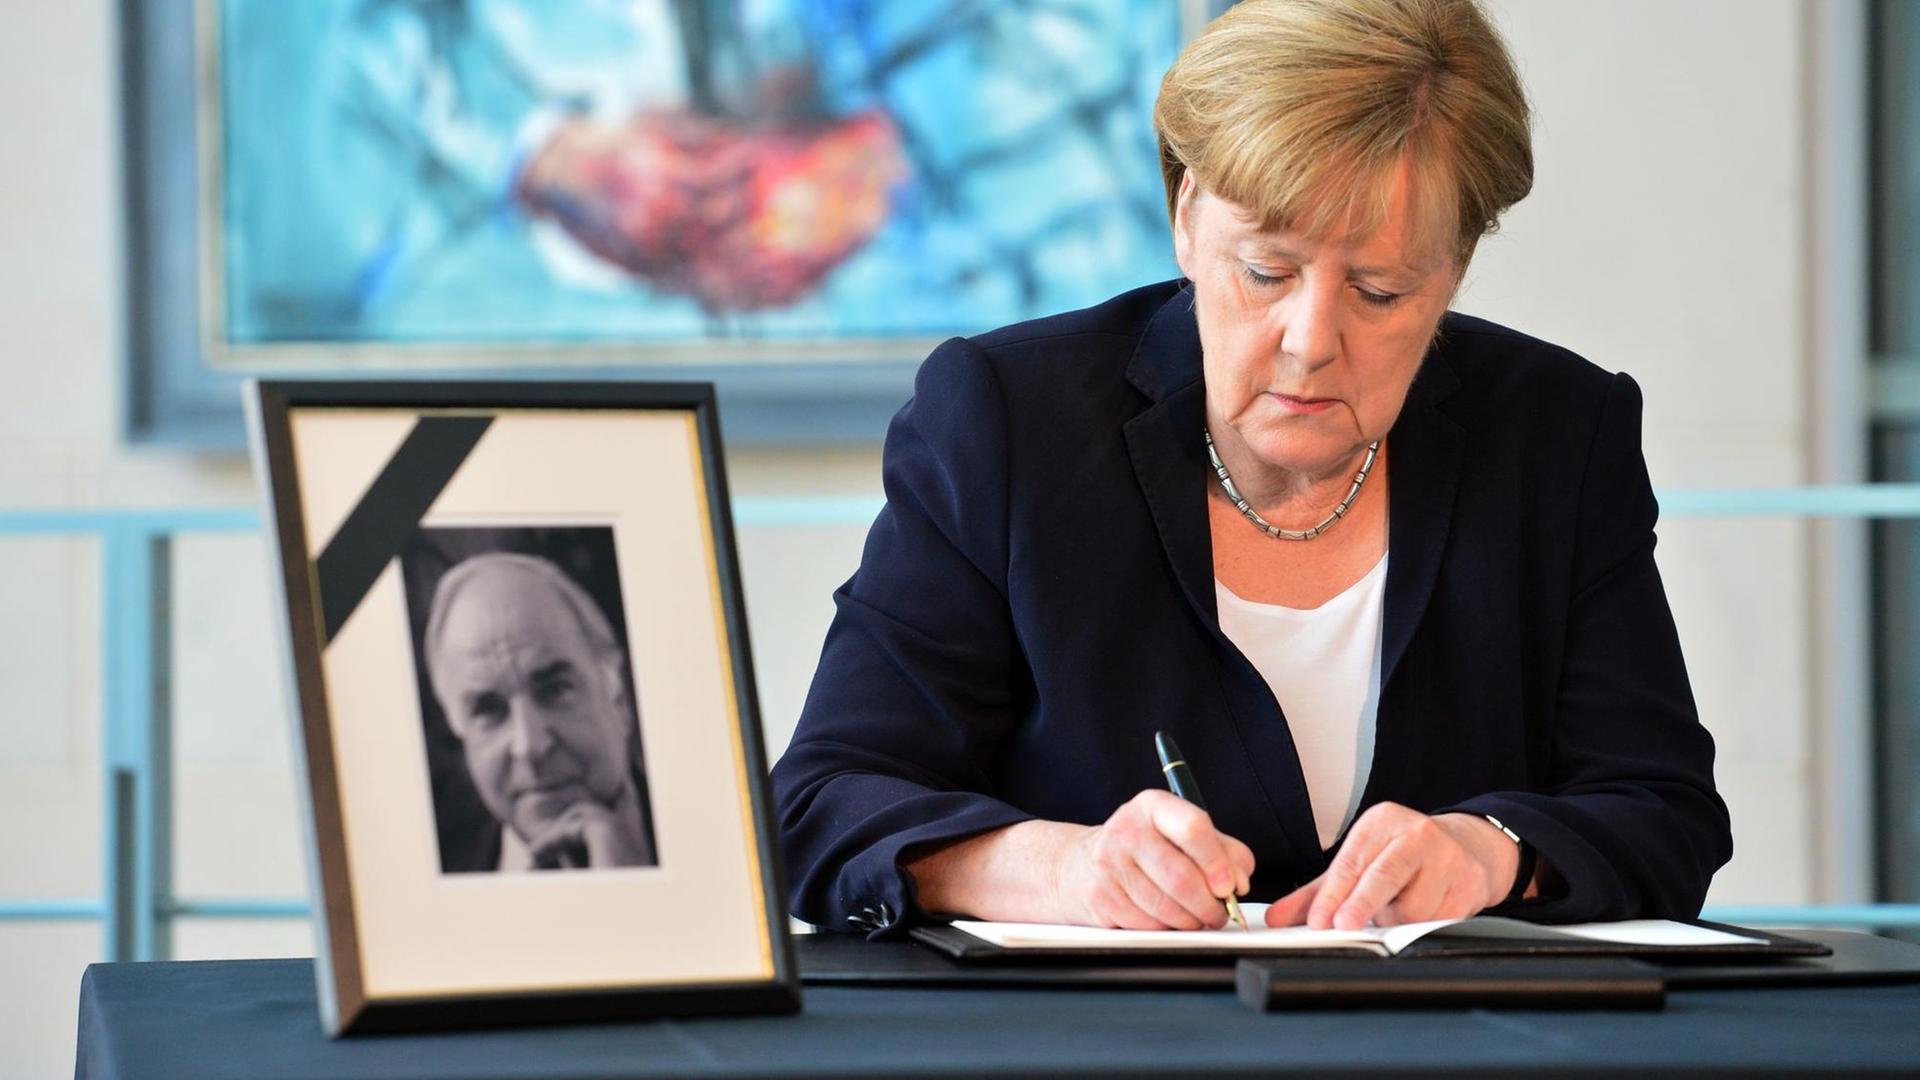 Bundeskanzlerin Angela Merkel (CDU) trägt sich am 18.06.2017 im Bundeskanzleramt in Berlin in das Kondolenzbuch für den ehemaligen Bundeskanzler Helmut Kohl ein.